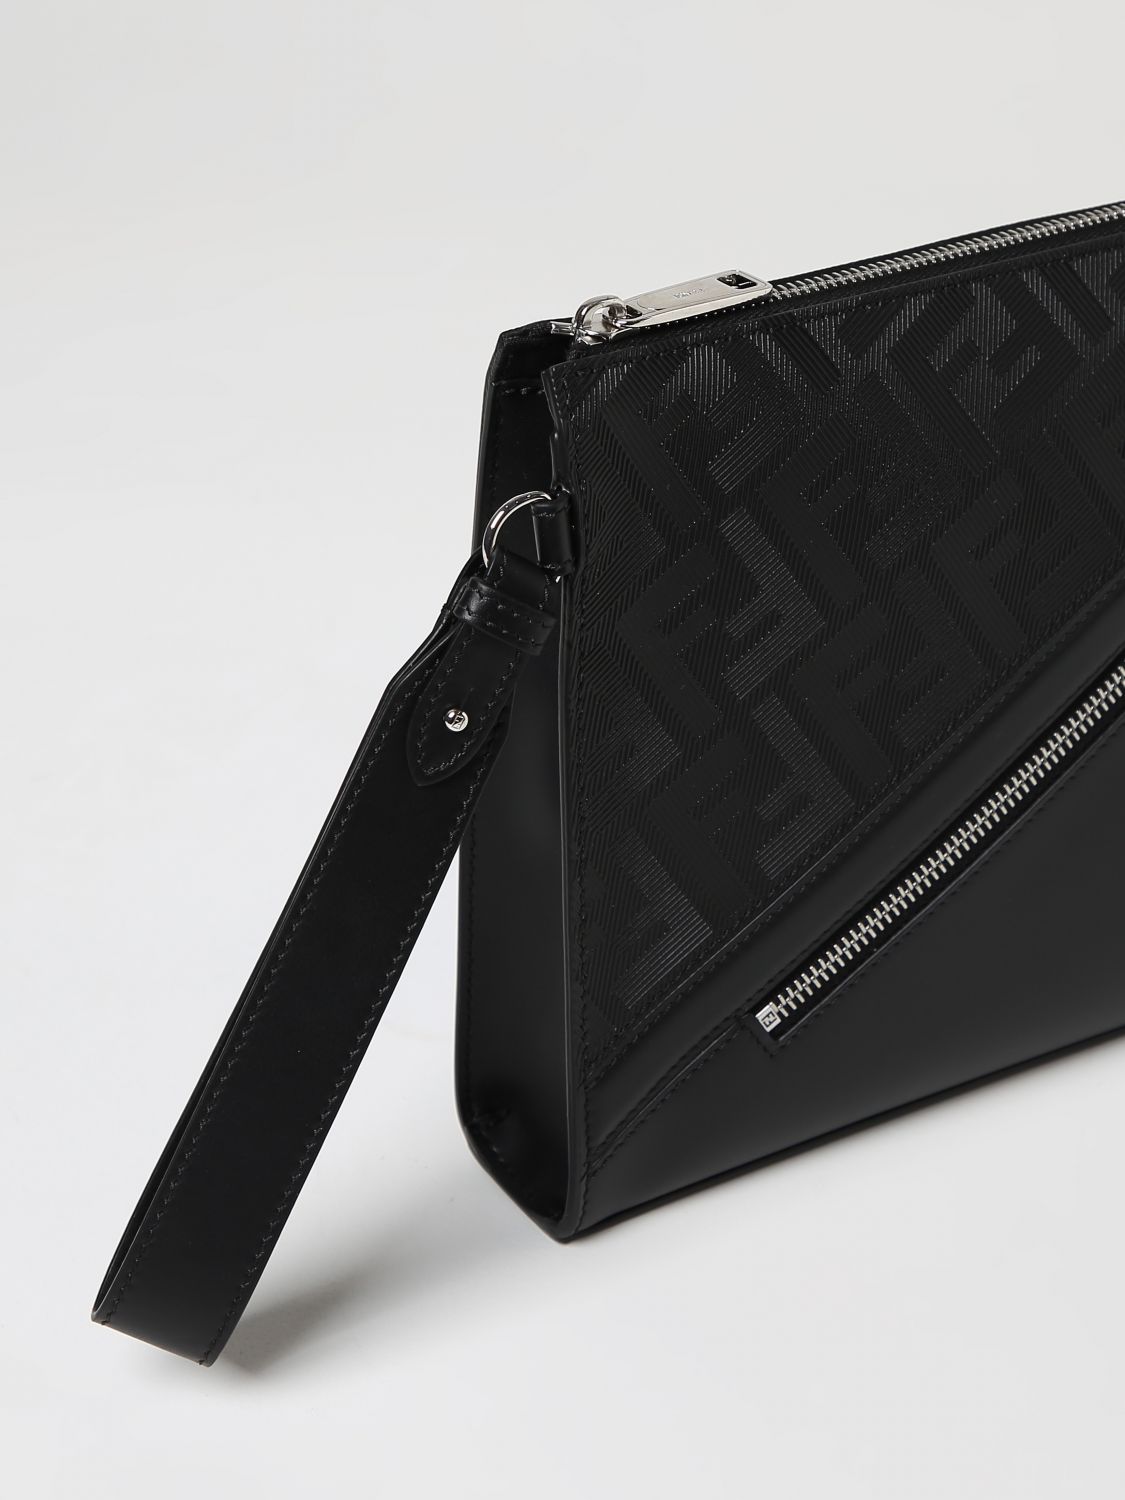 FENDI: Shadow Diagonal clutch in leather - Black  Fendi briefcase  7N0110AP1T online at